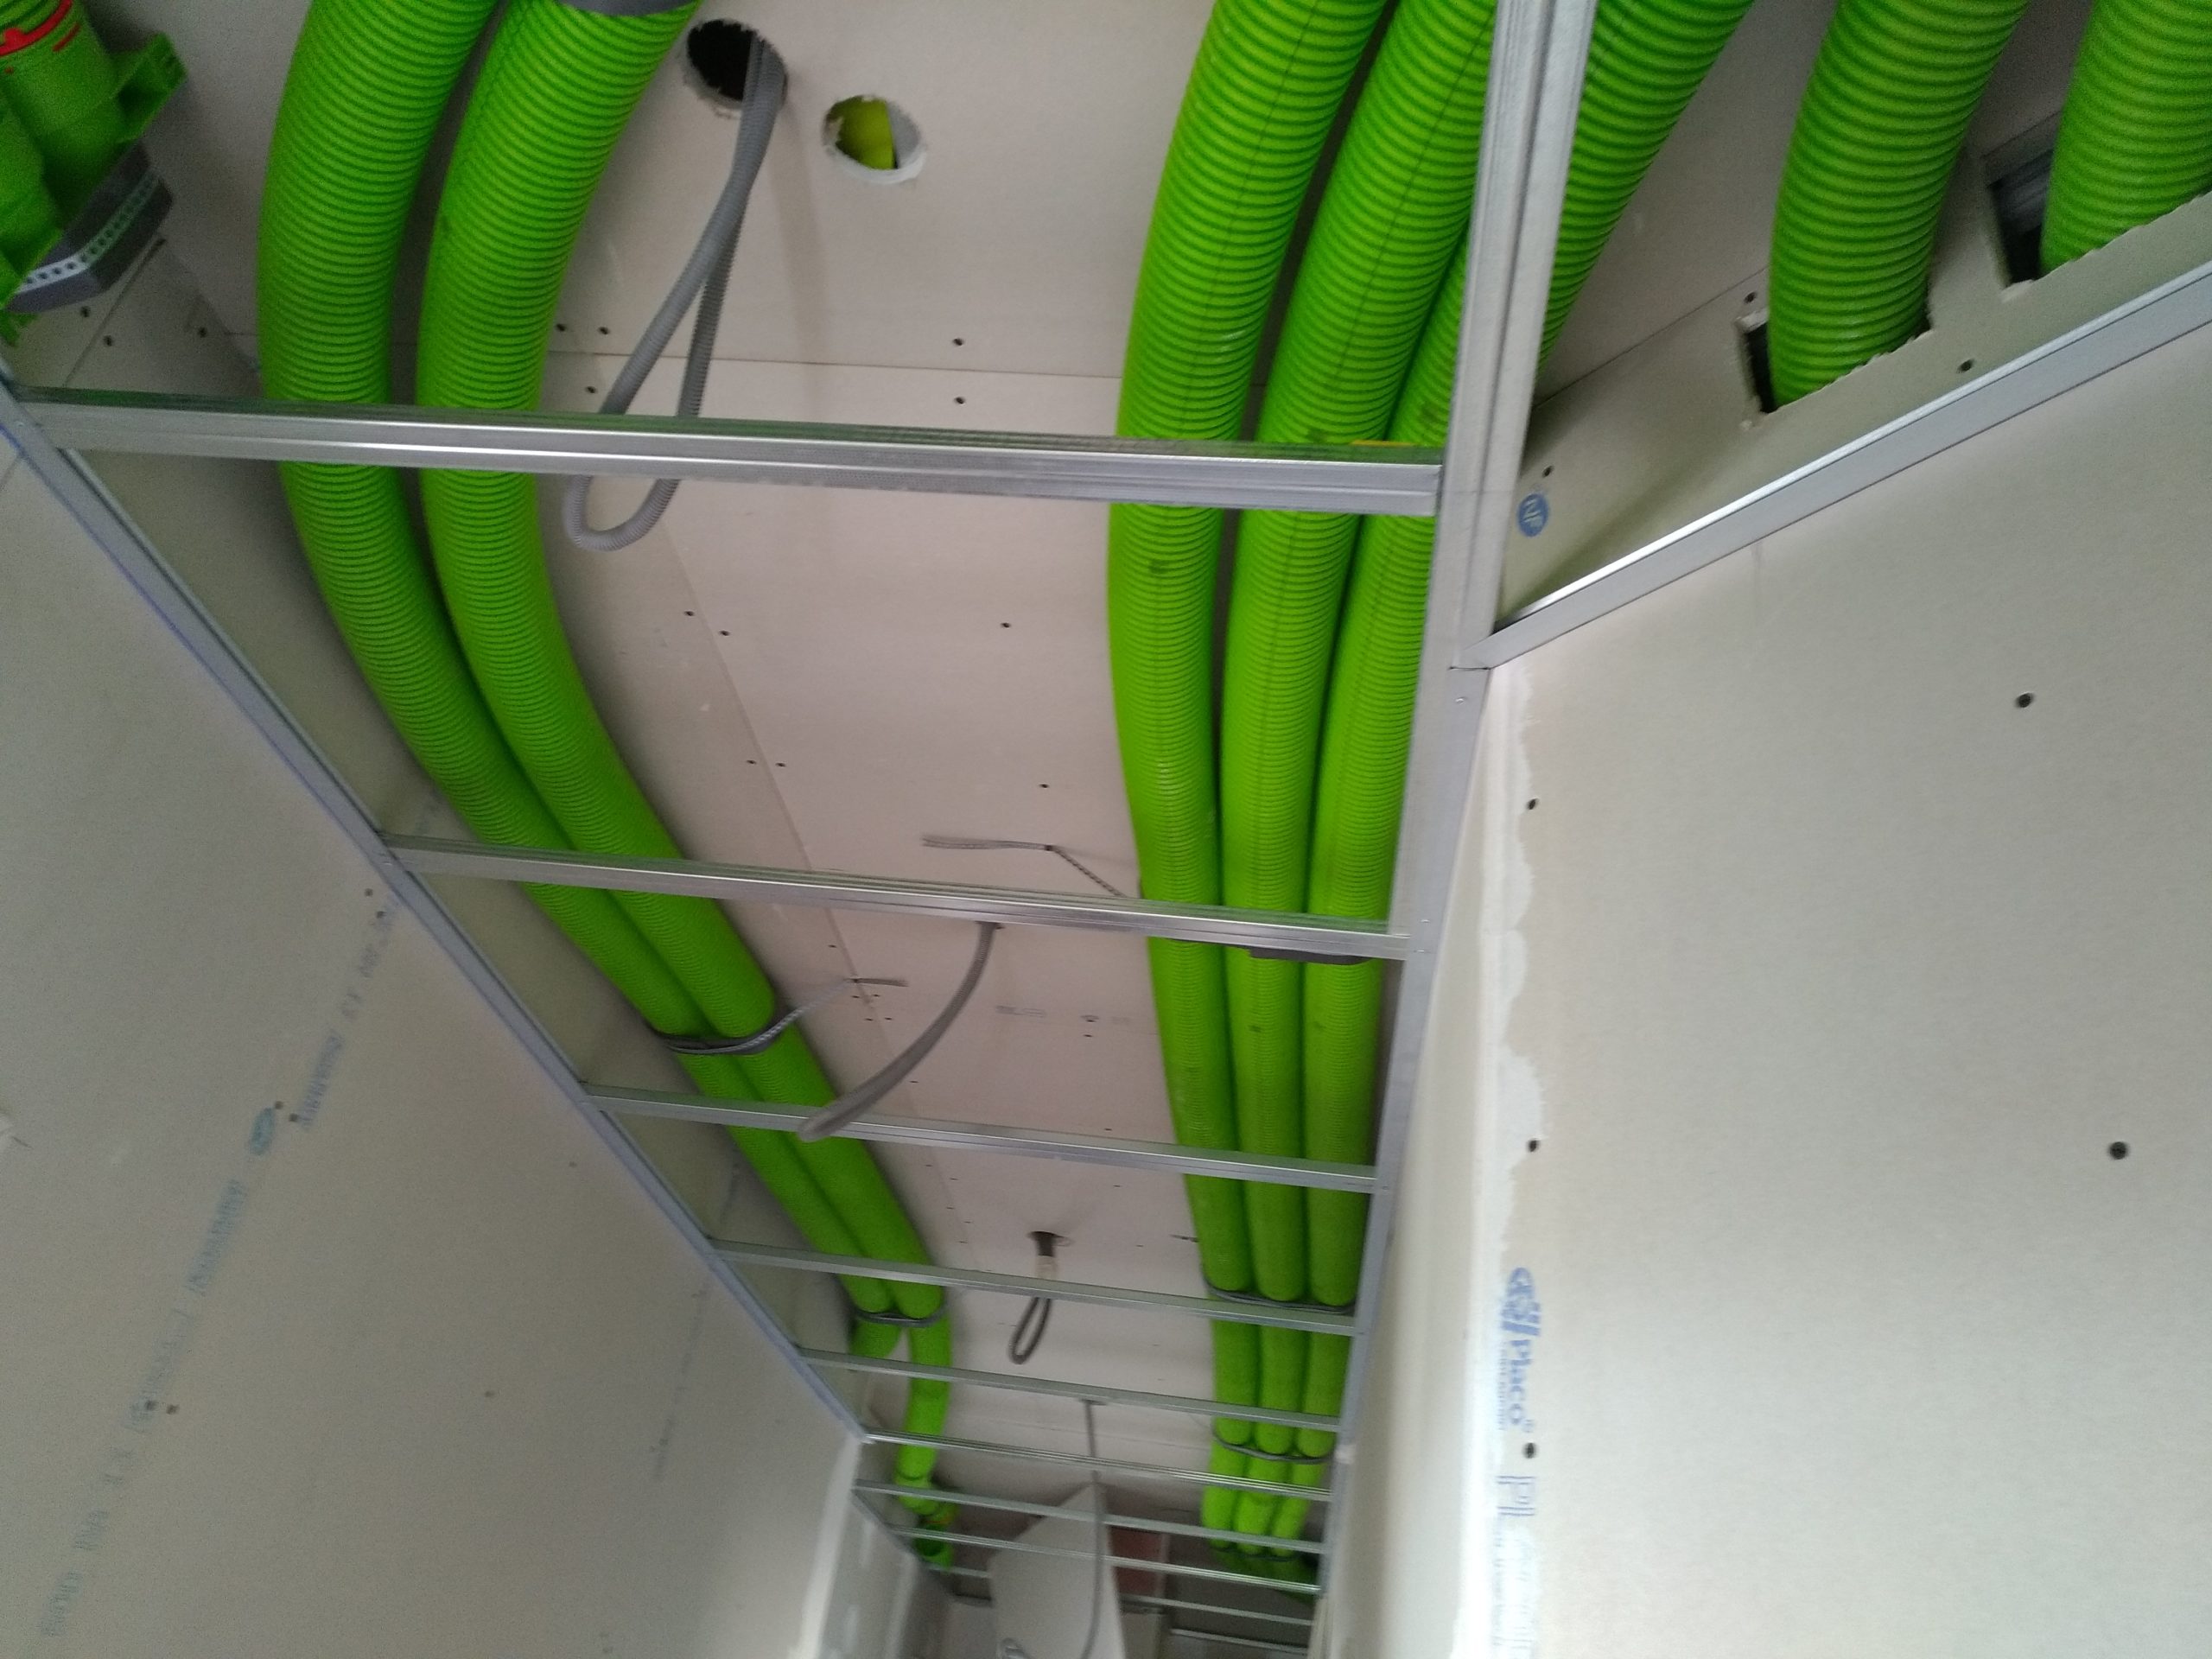 électricien Lyon installation dépannage électricité rénovation VMC double-flux conduits air neuf air vicié